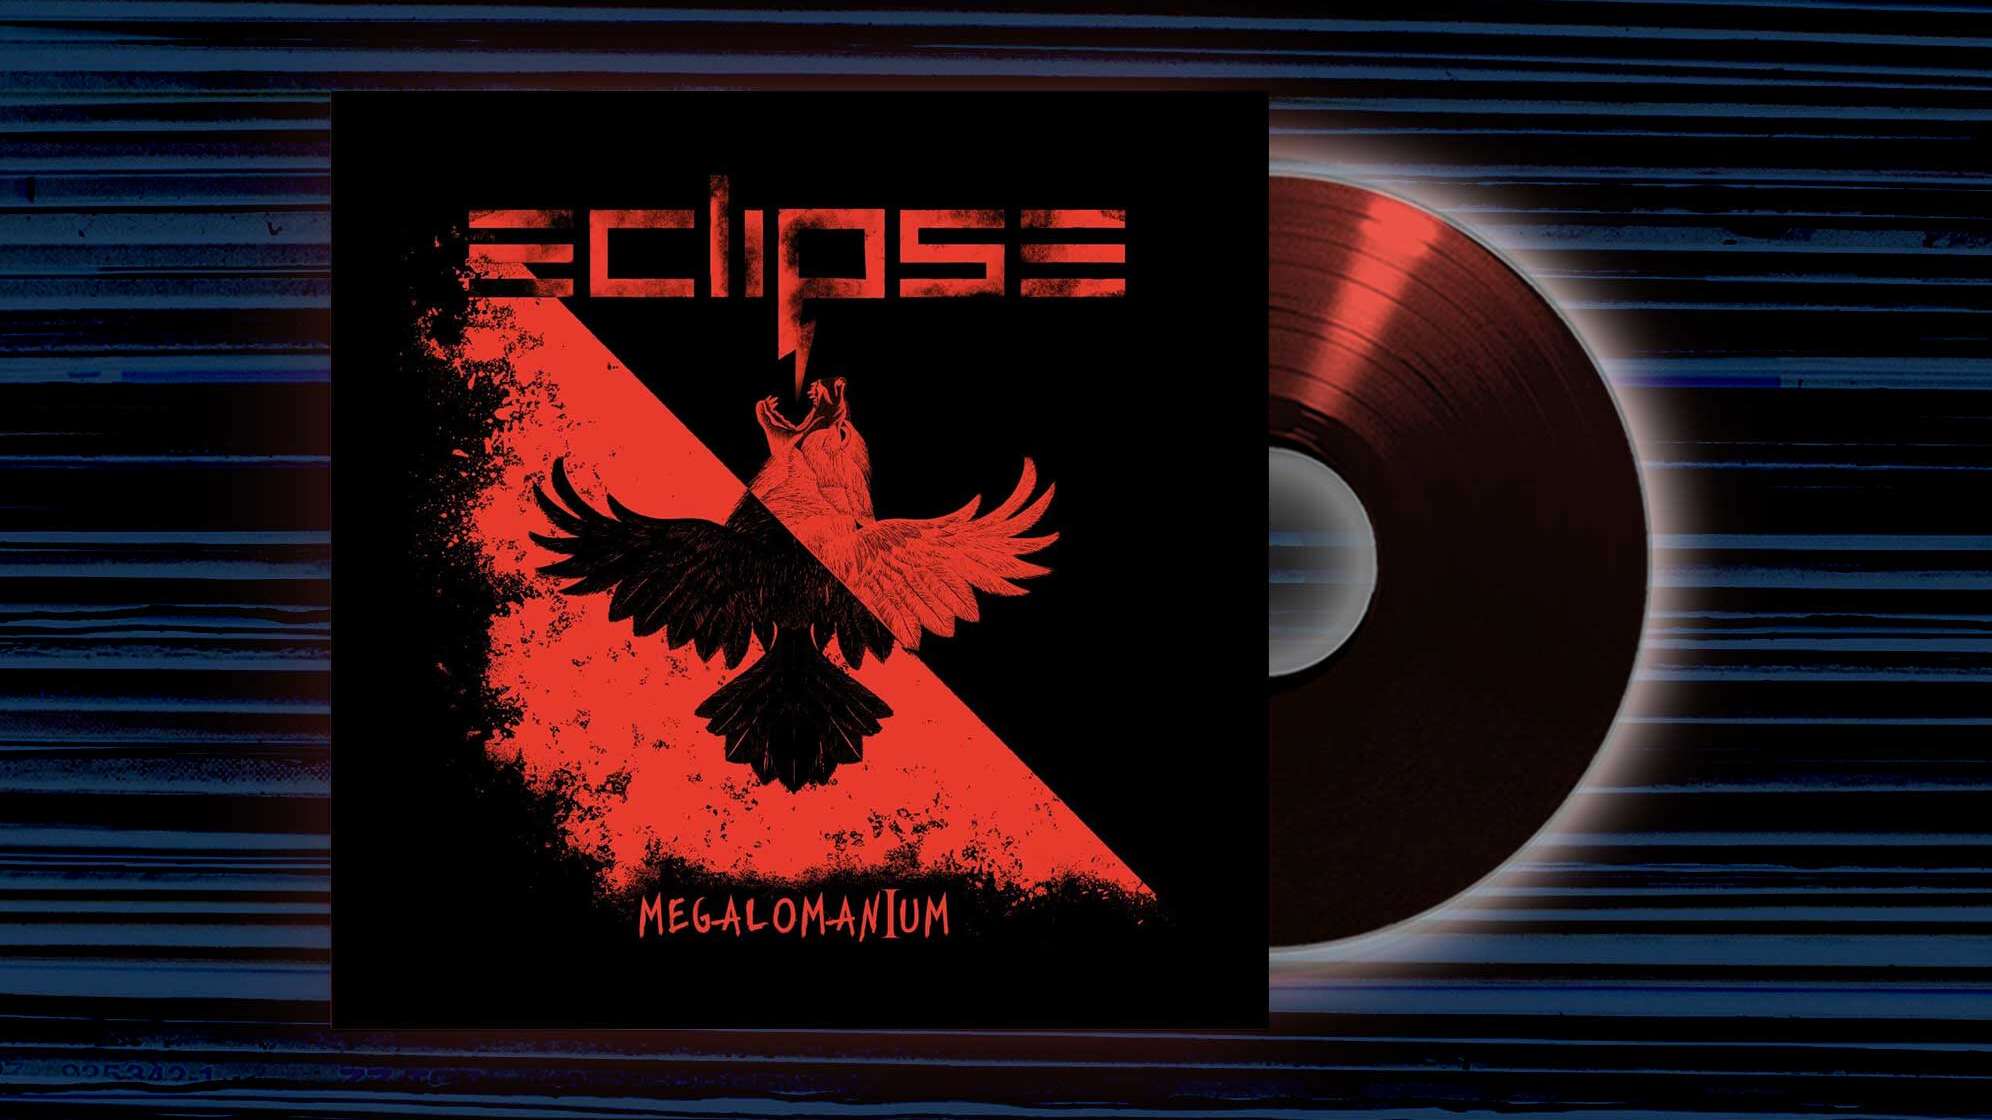 Das Albumcover von Eclipse - "Megalomanium"